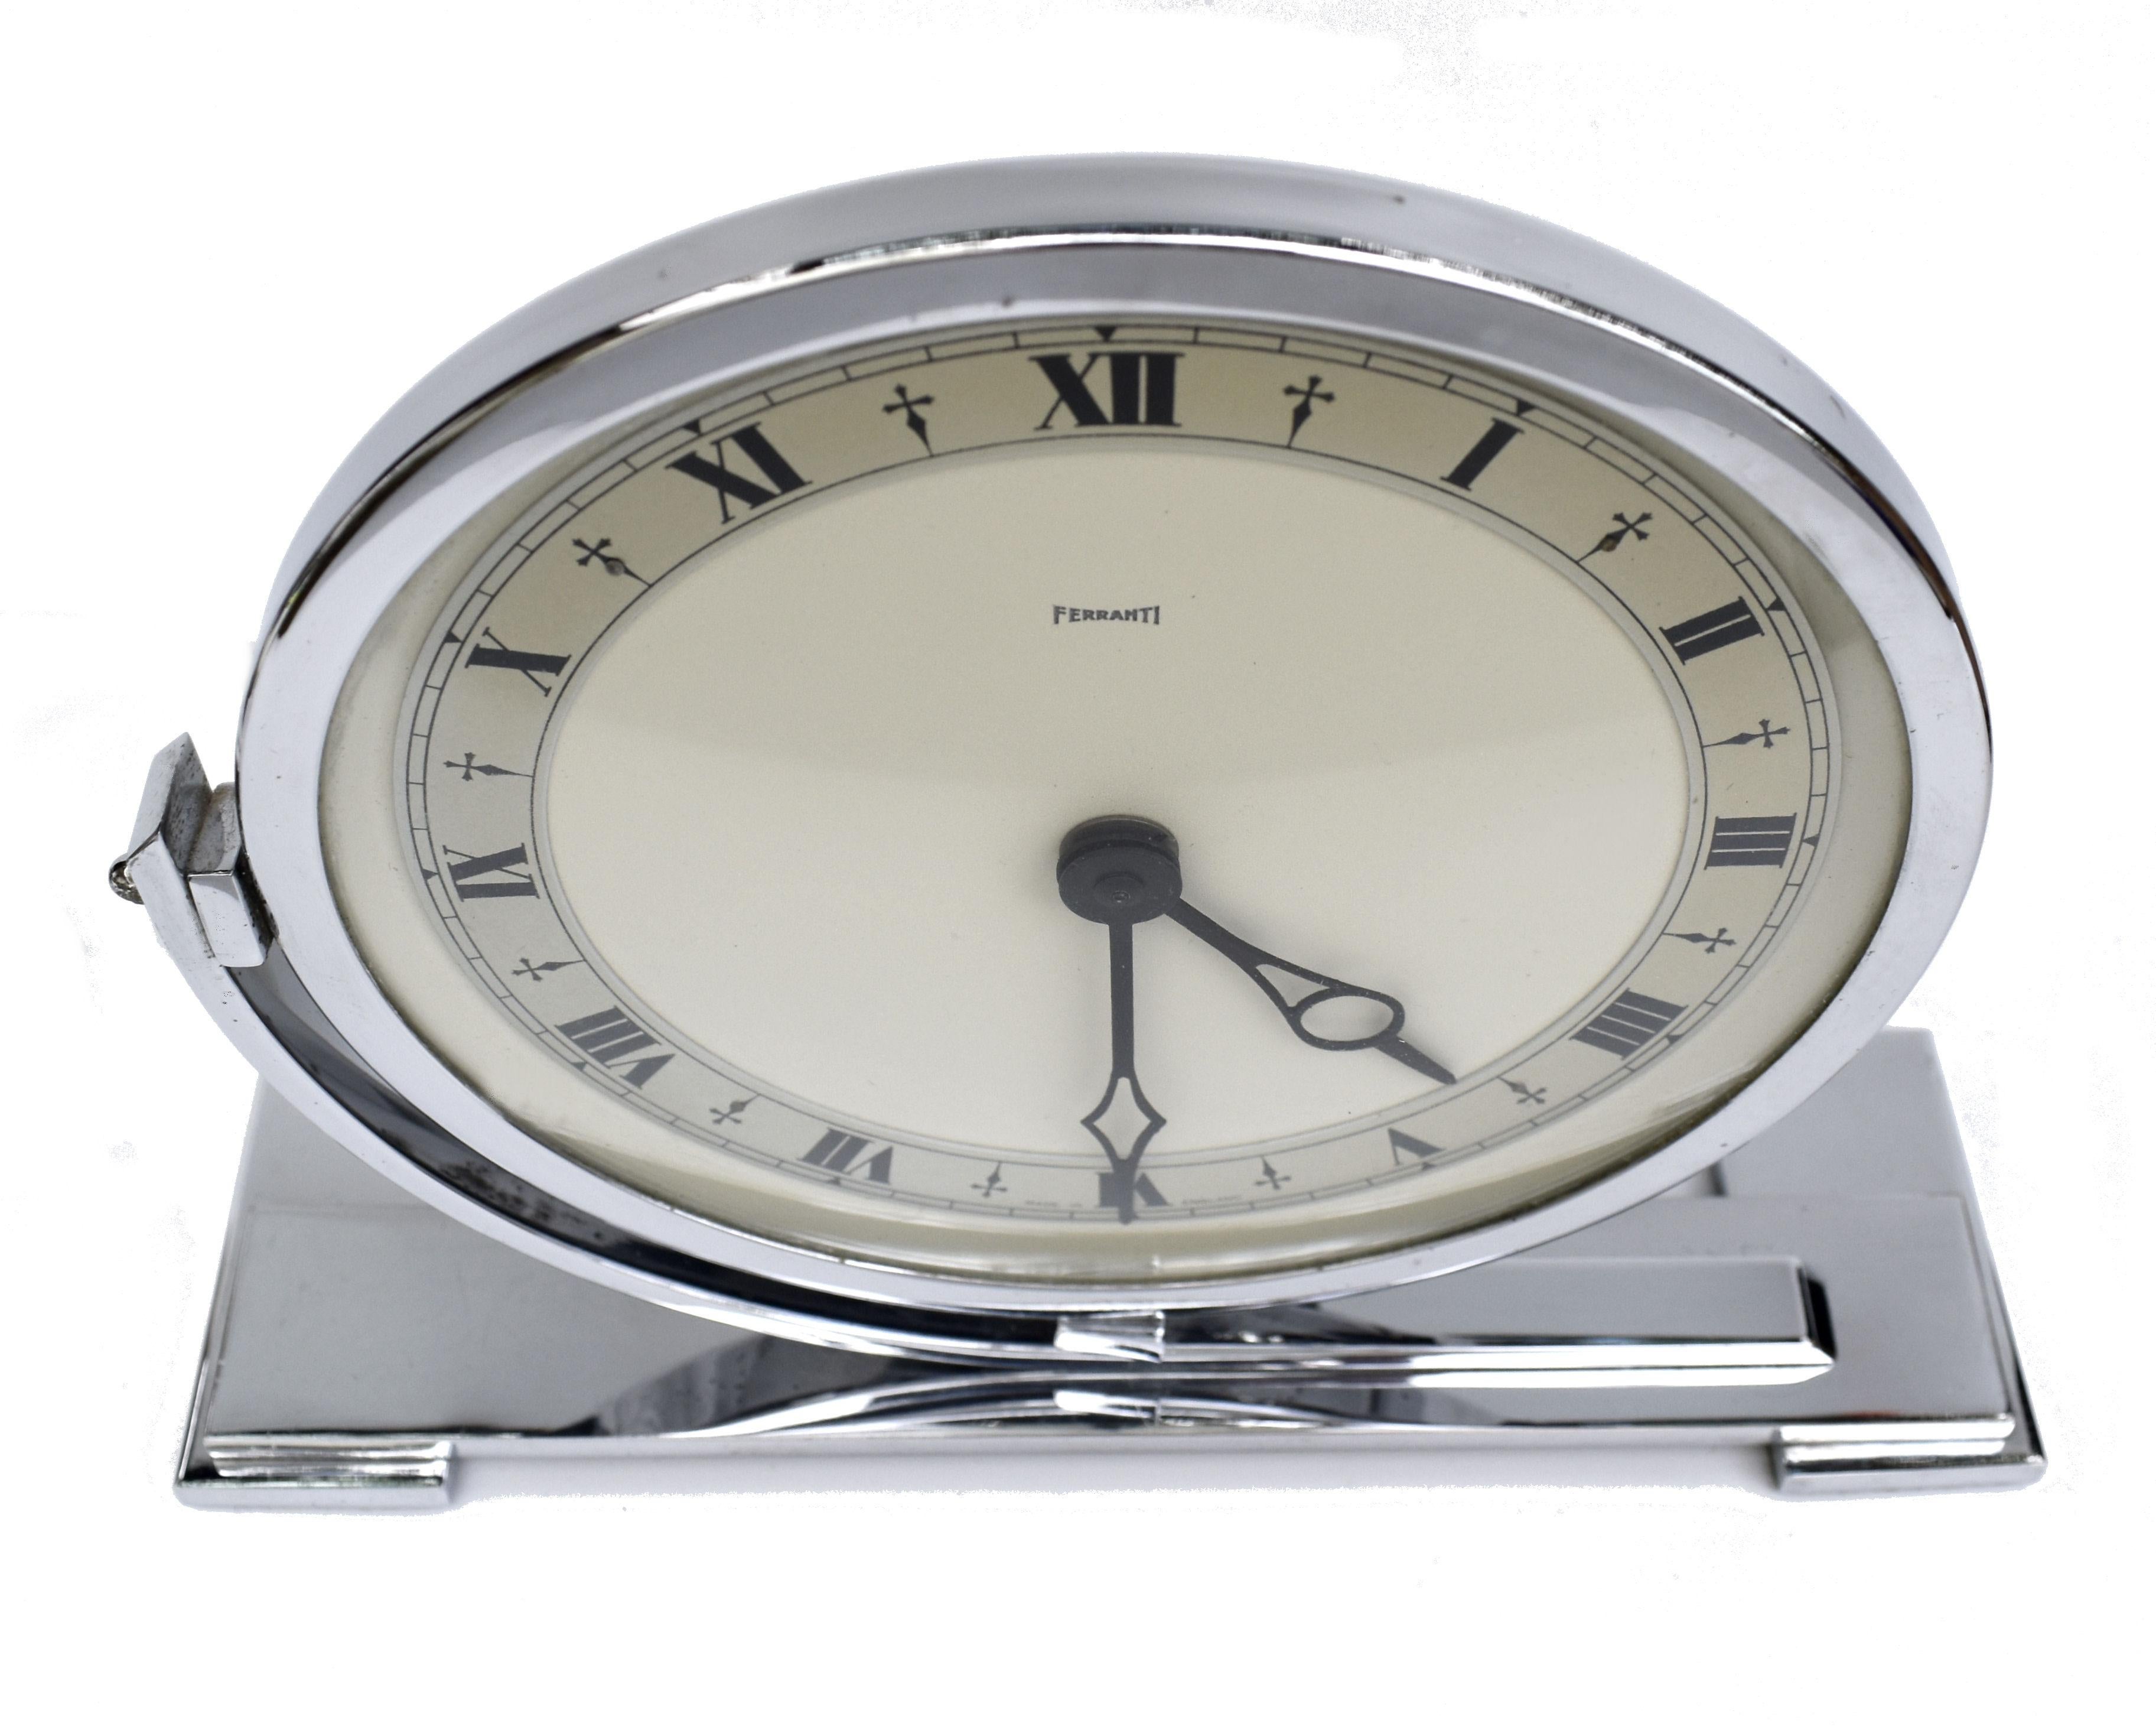 Sehr stilvolle große verchromte Manteluhr der englischen Uhrenmanufaktur Ferranti. Diese elektrische Uhr aus den 1930er Jahren ist ein absolutes Schmuckstück und in bemerkenswertem Zustand mit fast perfektem Chrom. Großes Format, perfekt für